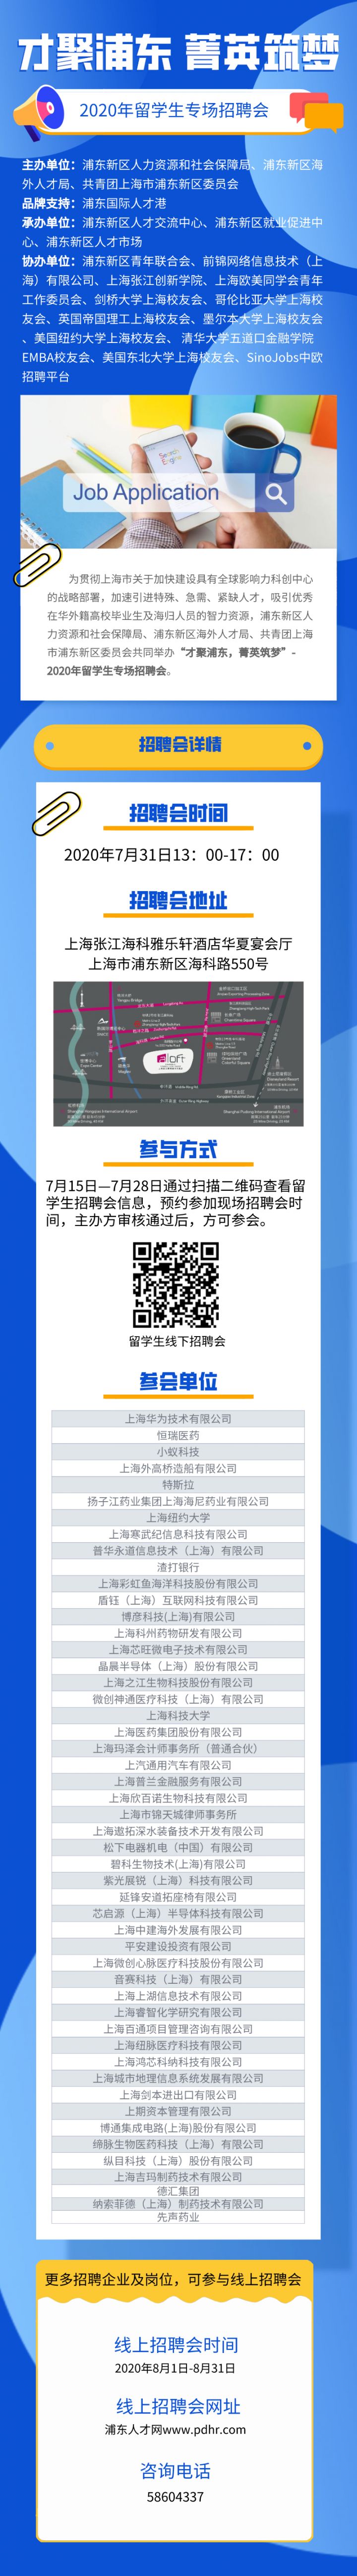 2020年上海留学生专场招聘会7月31日举办